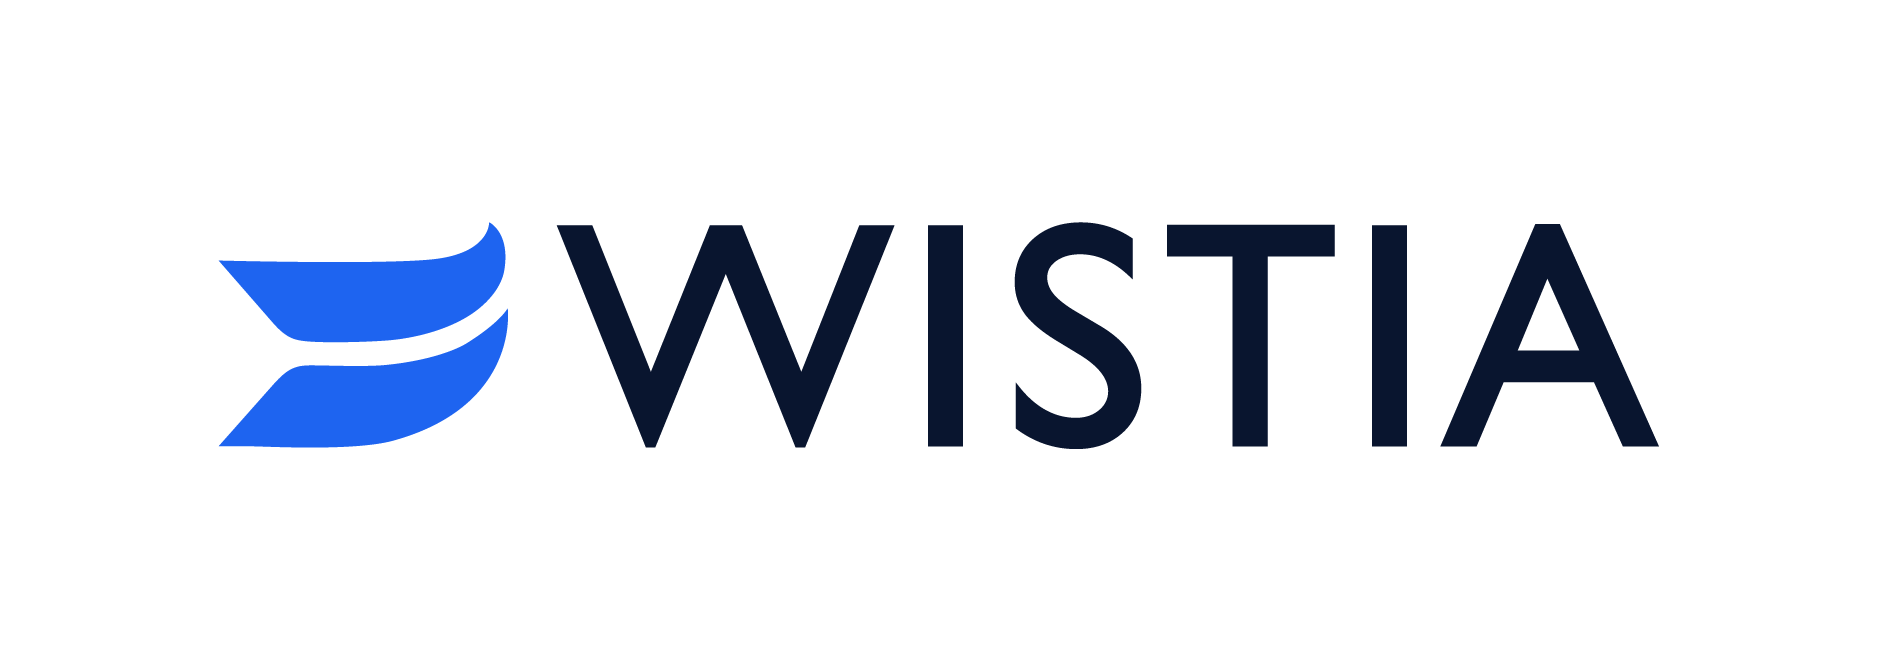 wistia-logo_color.png